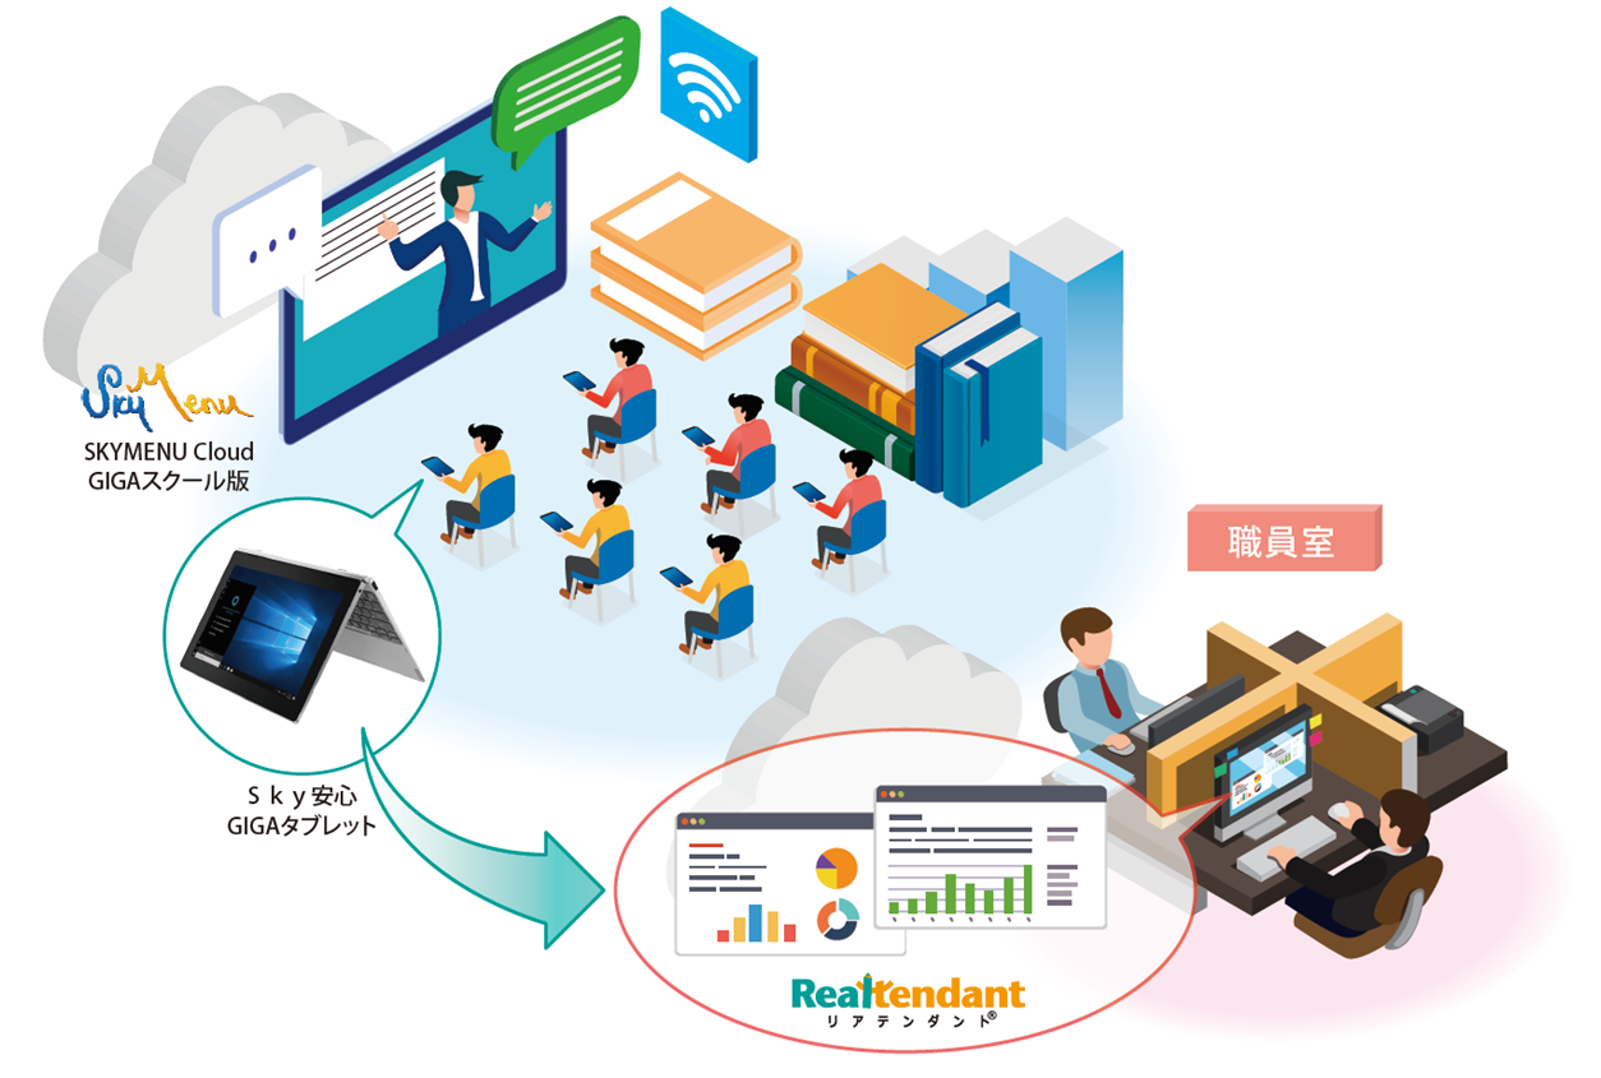 大日本印刷とｓｋｙ社が協業 ｇｉｇａスクール構想 に向けて Windowsタブレットにaiドリル教材を搭載し提供 ニュース Dnp 大日本印刷